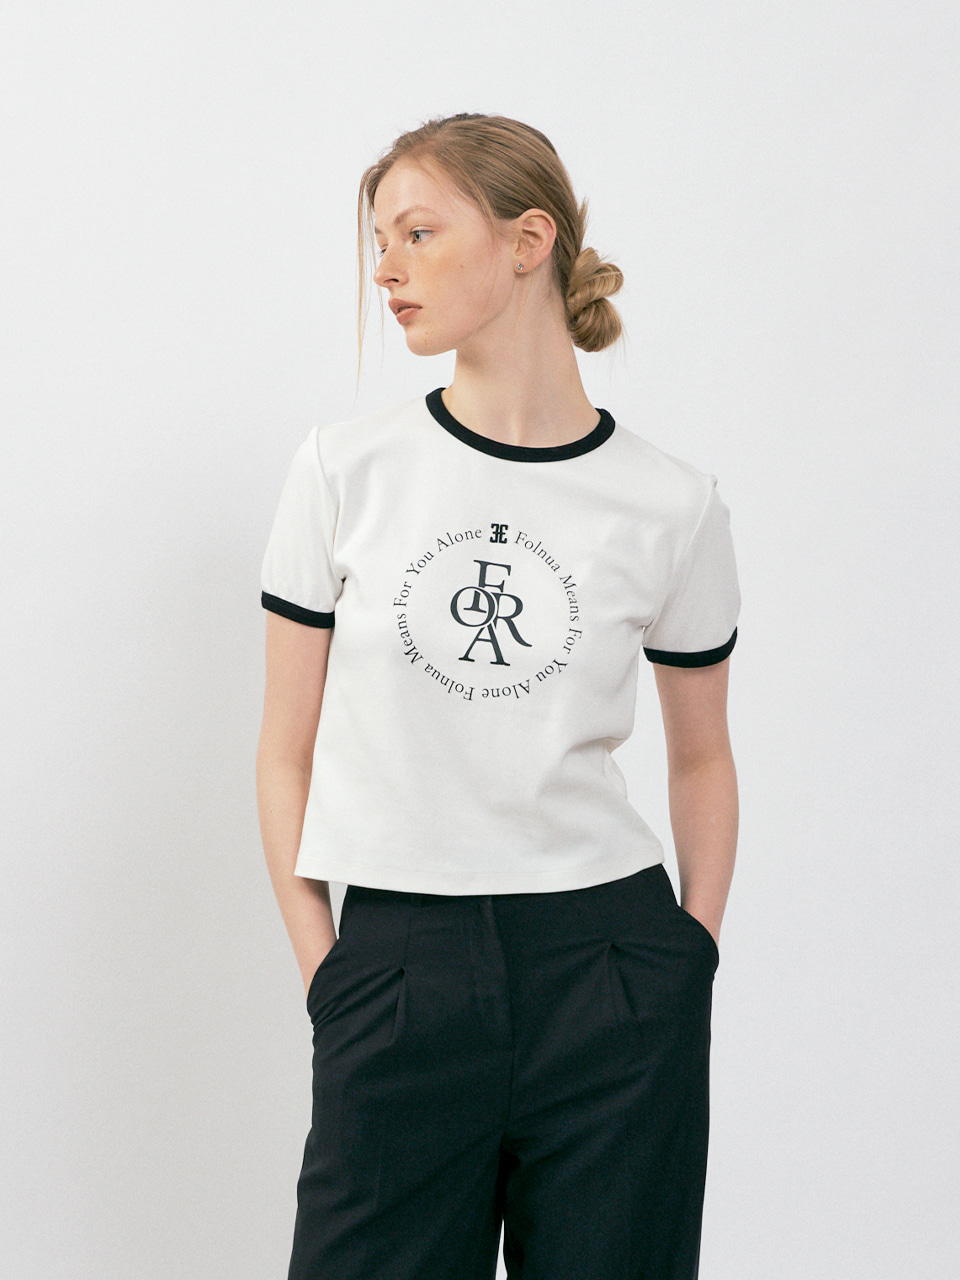 FOLNUA(フォルニュア) カラーレーションスローガンロゴTシャツ / ホワイトブラック